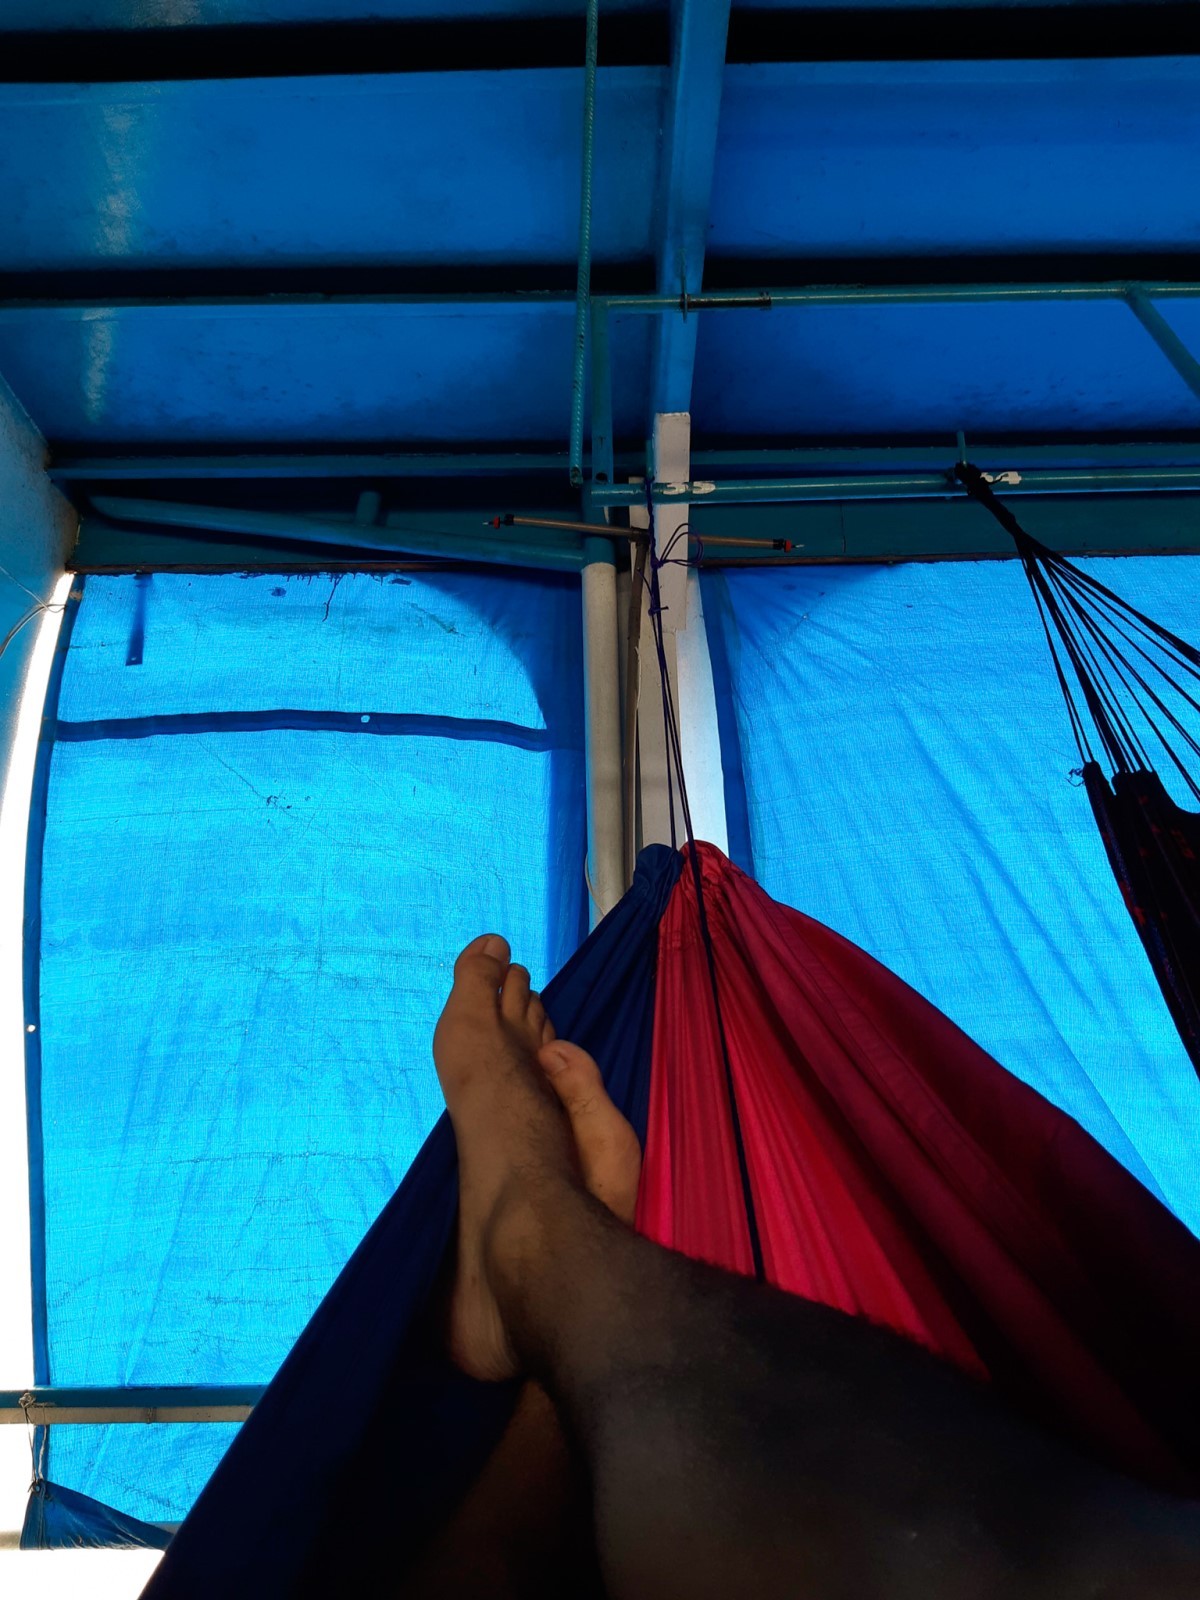 O fim do dia se aproxima na embarcação, onde as redes de dormir já estão armadas, prontas para o descanso (Foto: @marcelooseas/ Divulgação)